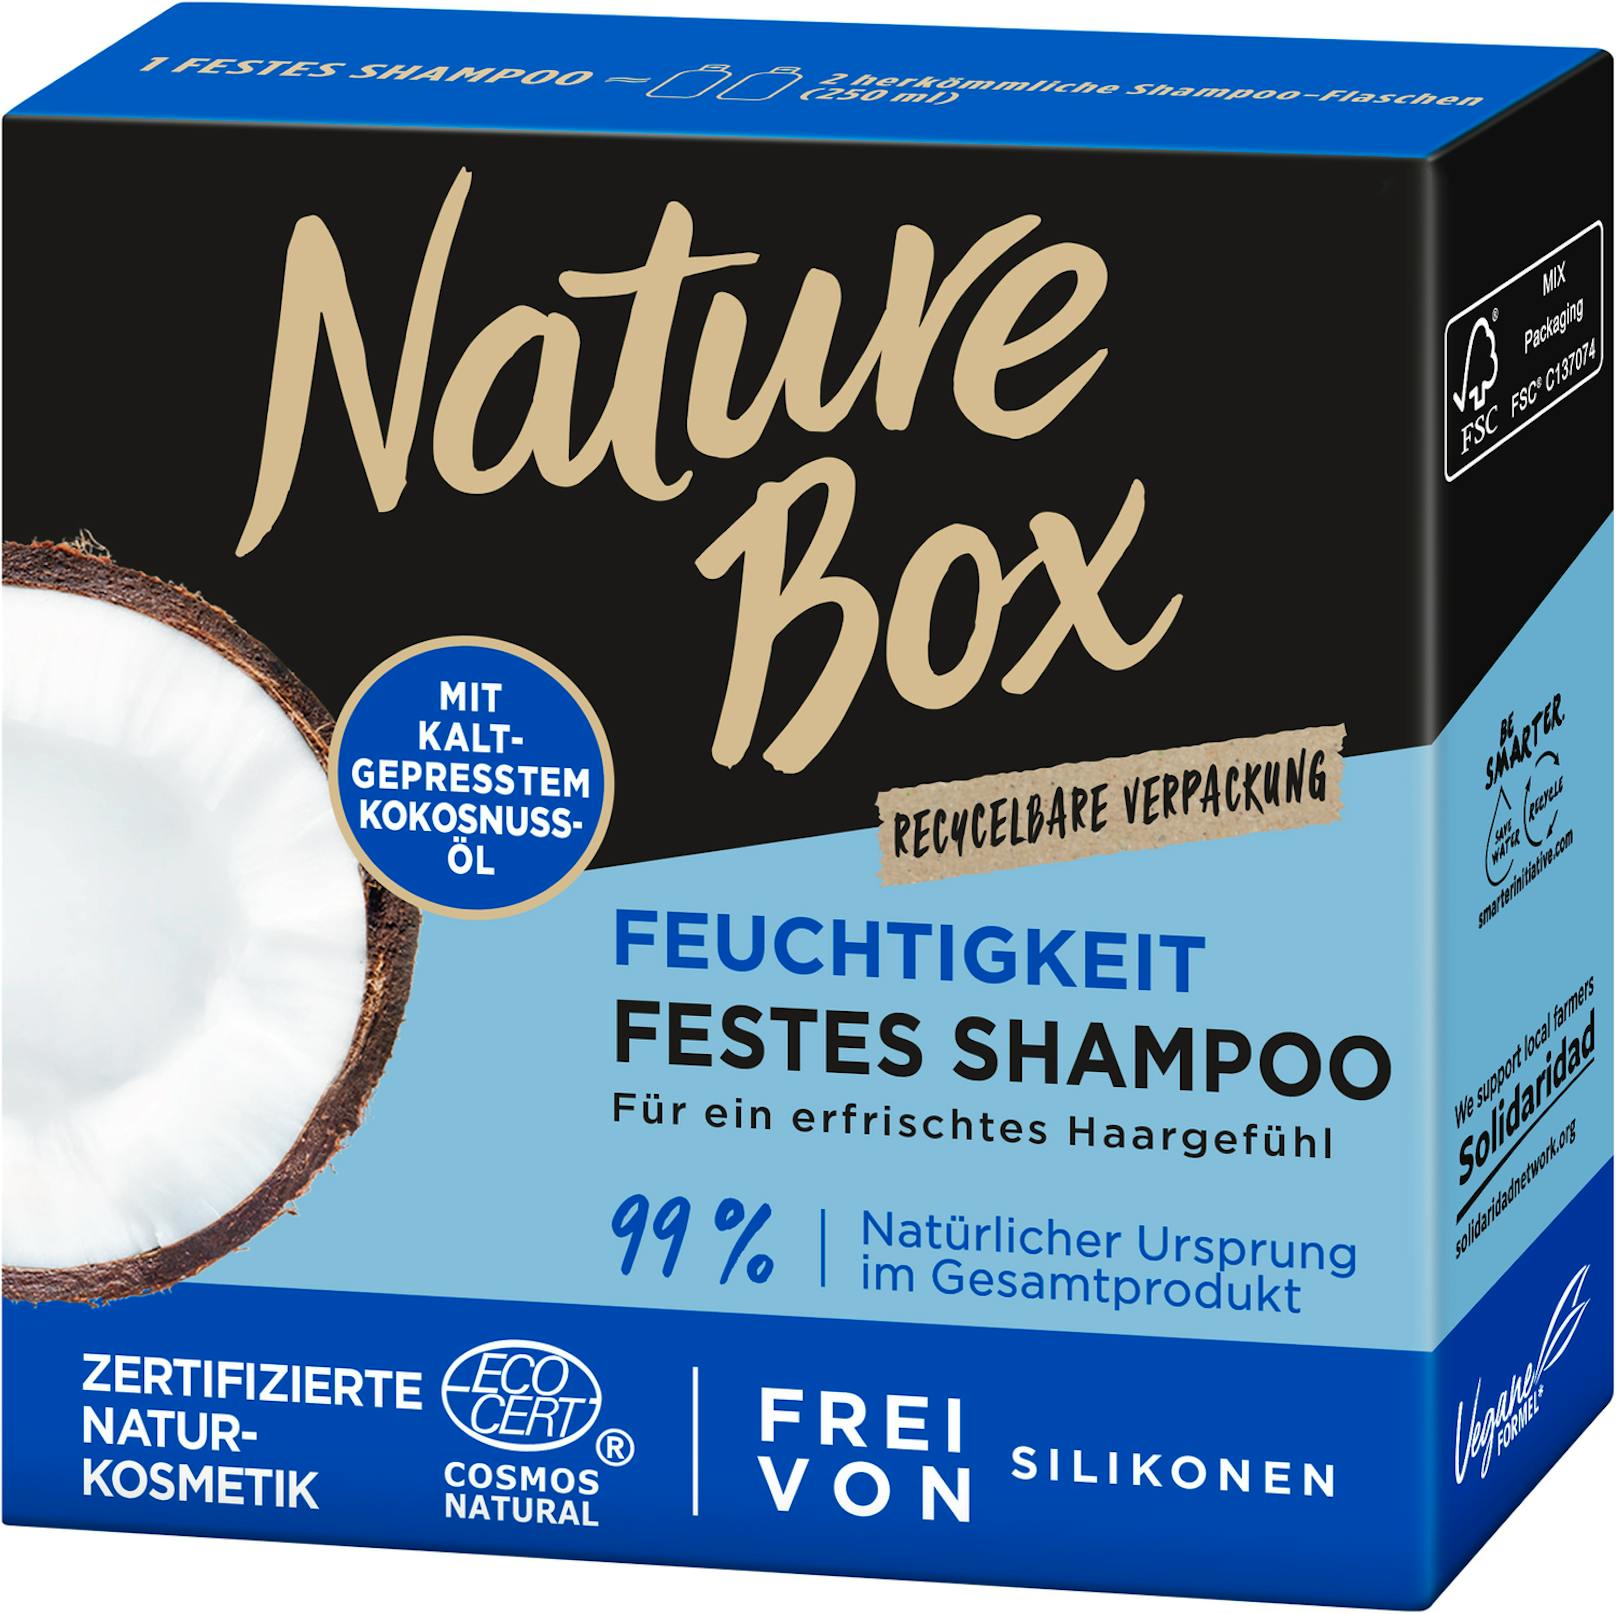 Gewinne jetzt ein Haarpflege-Set von Nature Box samt dem festen Shampoo mit kaltgepresstem Kokolnuss-Öl.